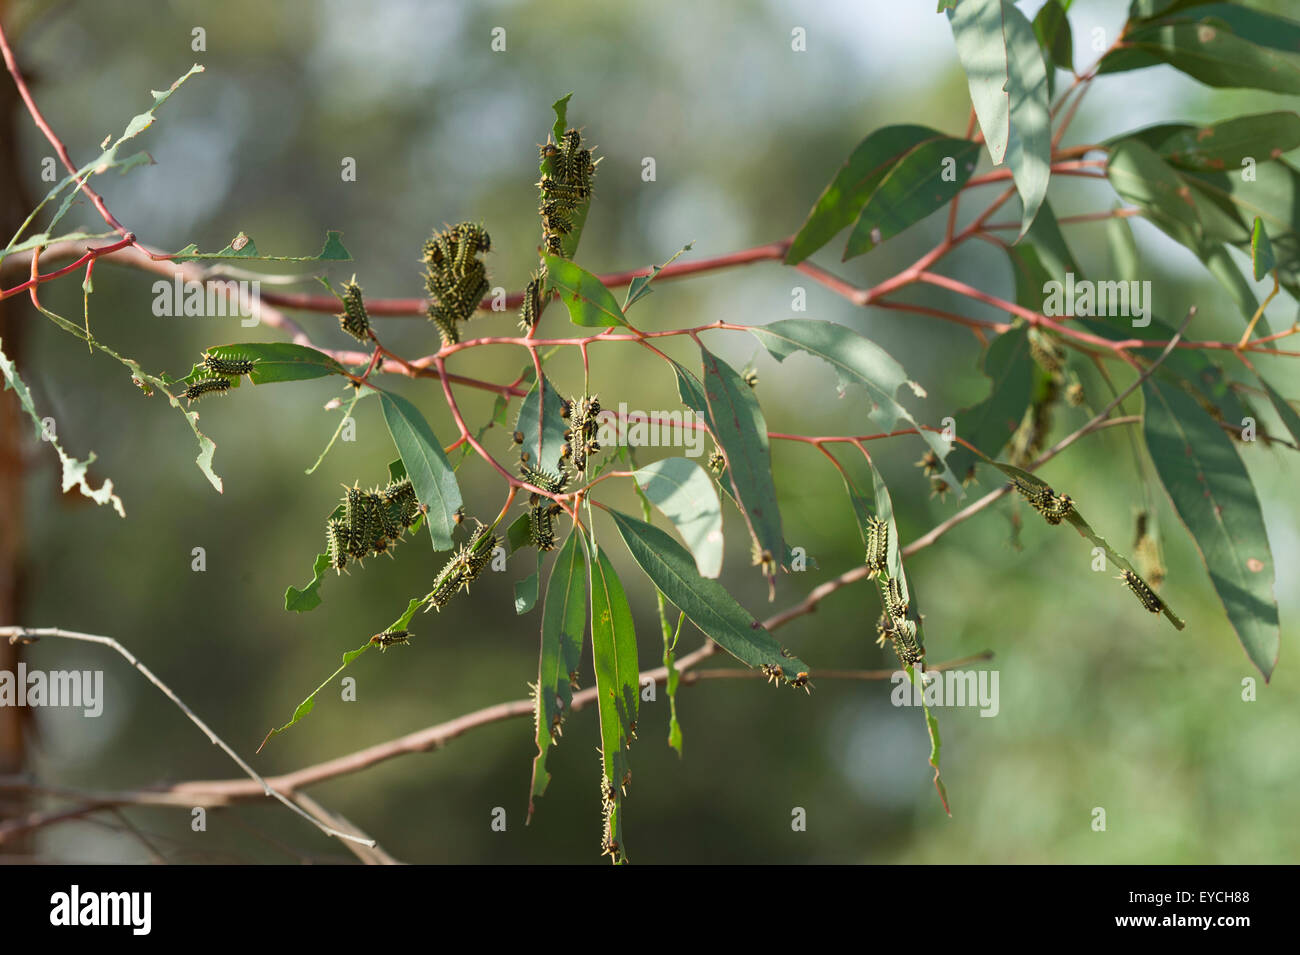 Black slug cup moth larvae damaging leaves on gum tree Stock Photo